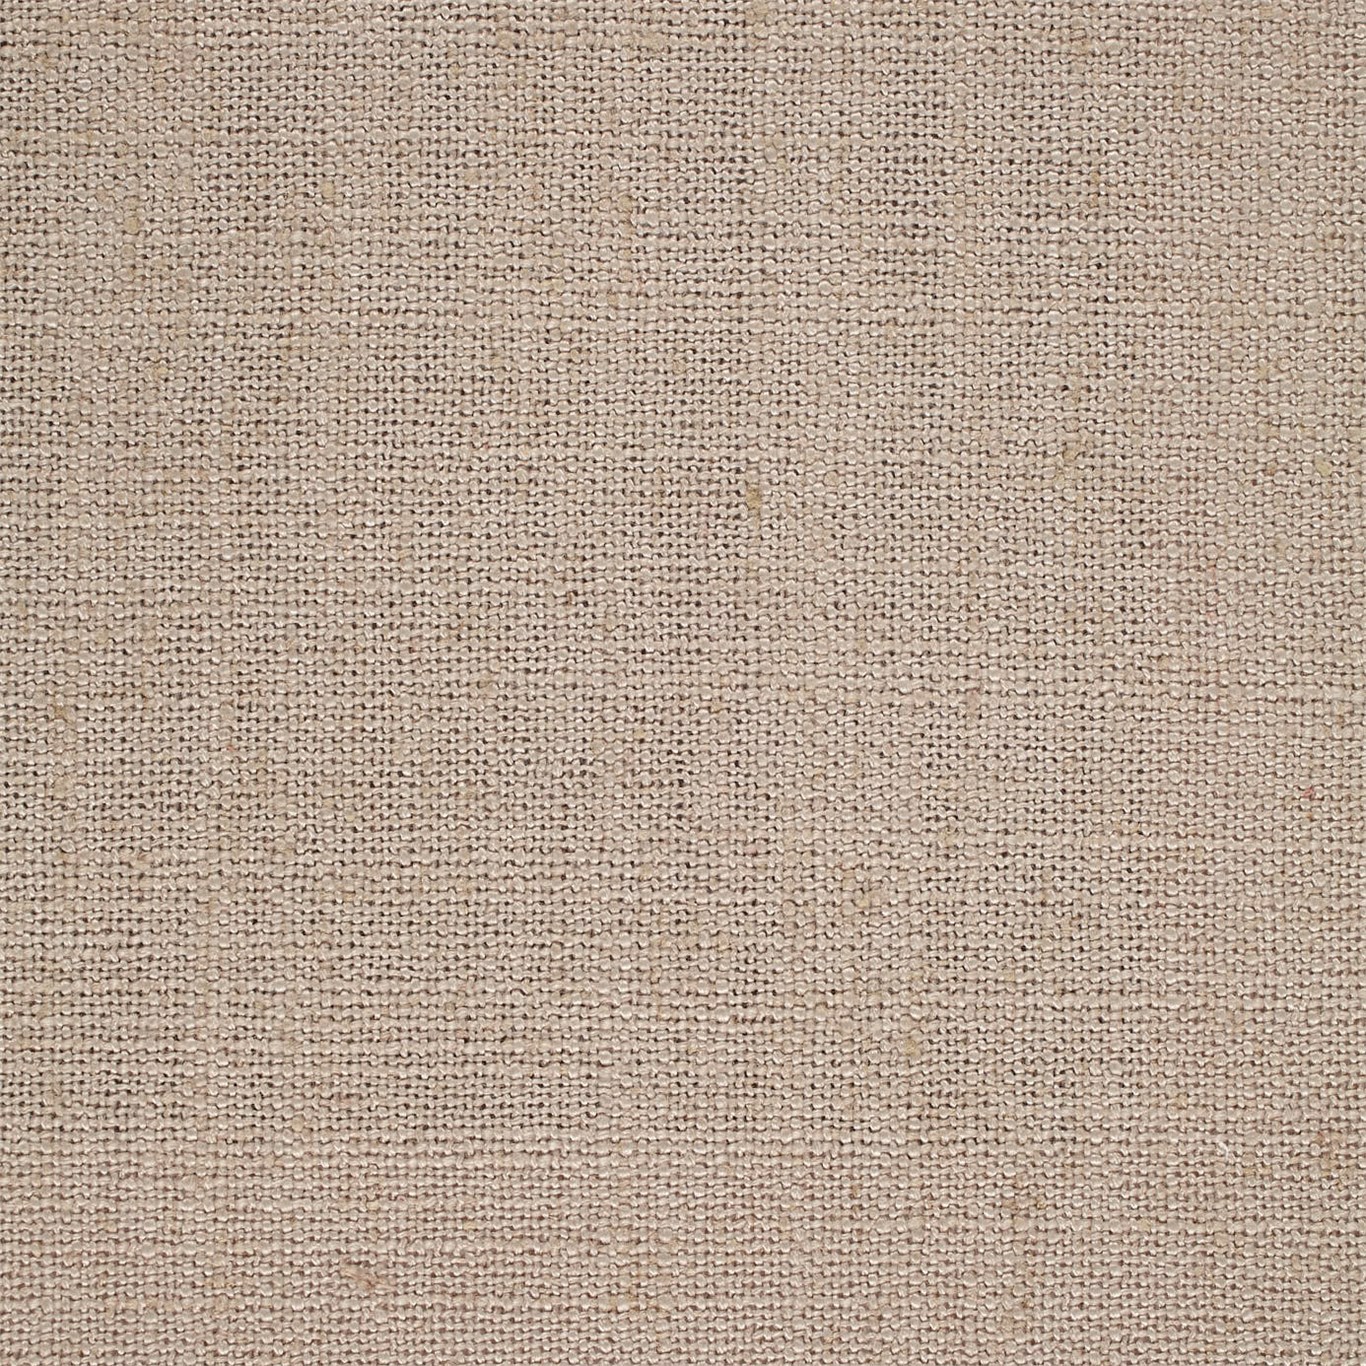 Lagom Flax Fabric by SAN